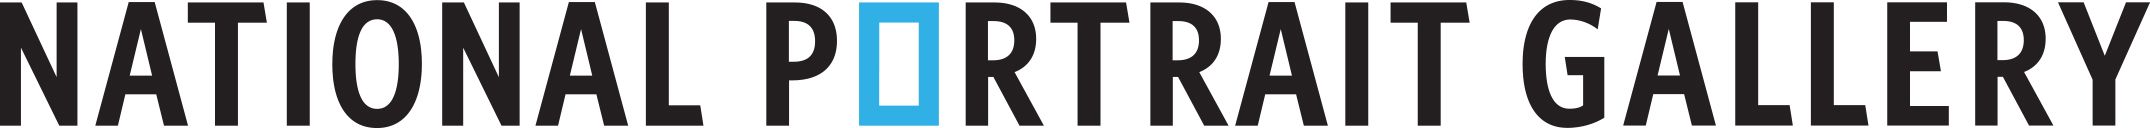 Nat Port Gall Logo.jpg